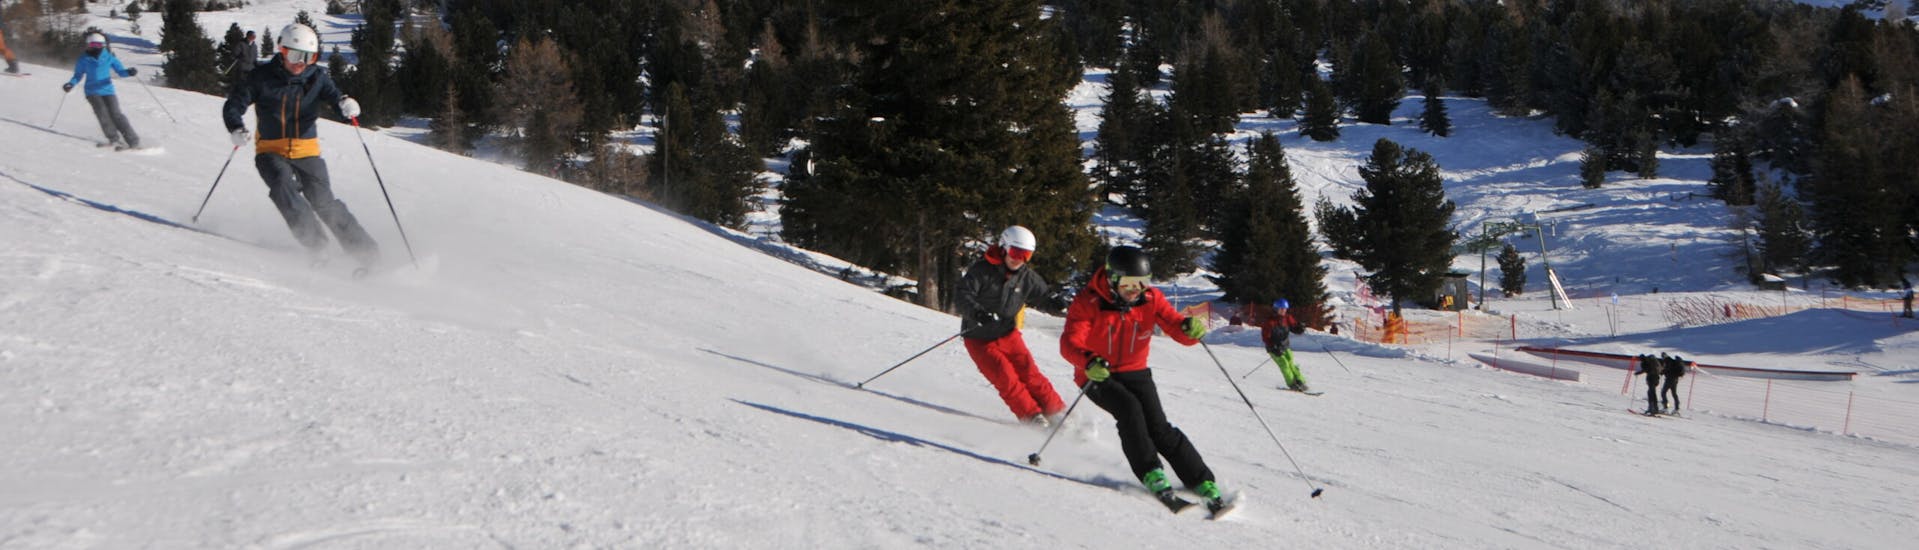 Privé skilessen voor volwassenen met ervaring met Ski- & Snowboardschule Innsbruck.